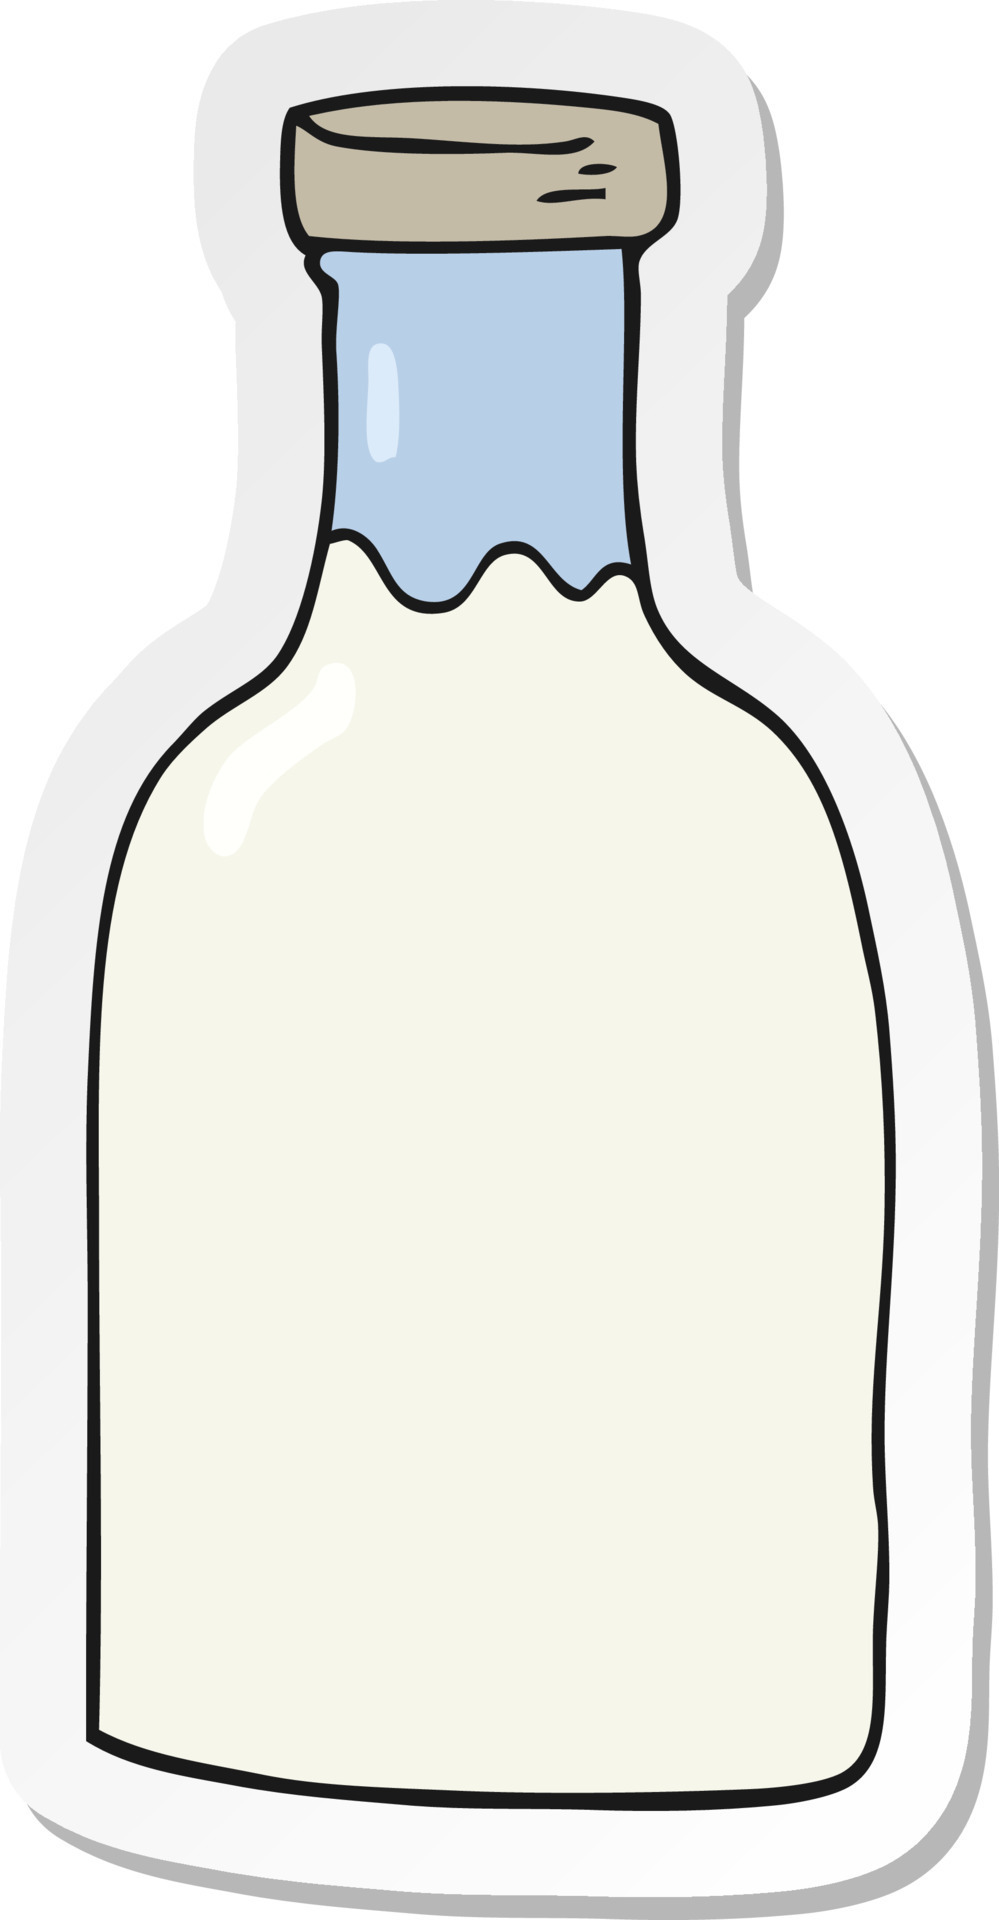 sticker of a cartoon milk bottle 12359575 Vector Art at Vecteezy